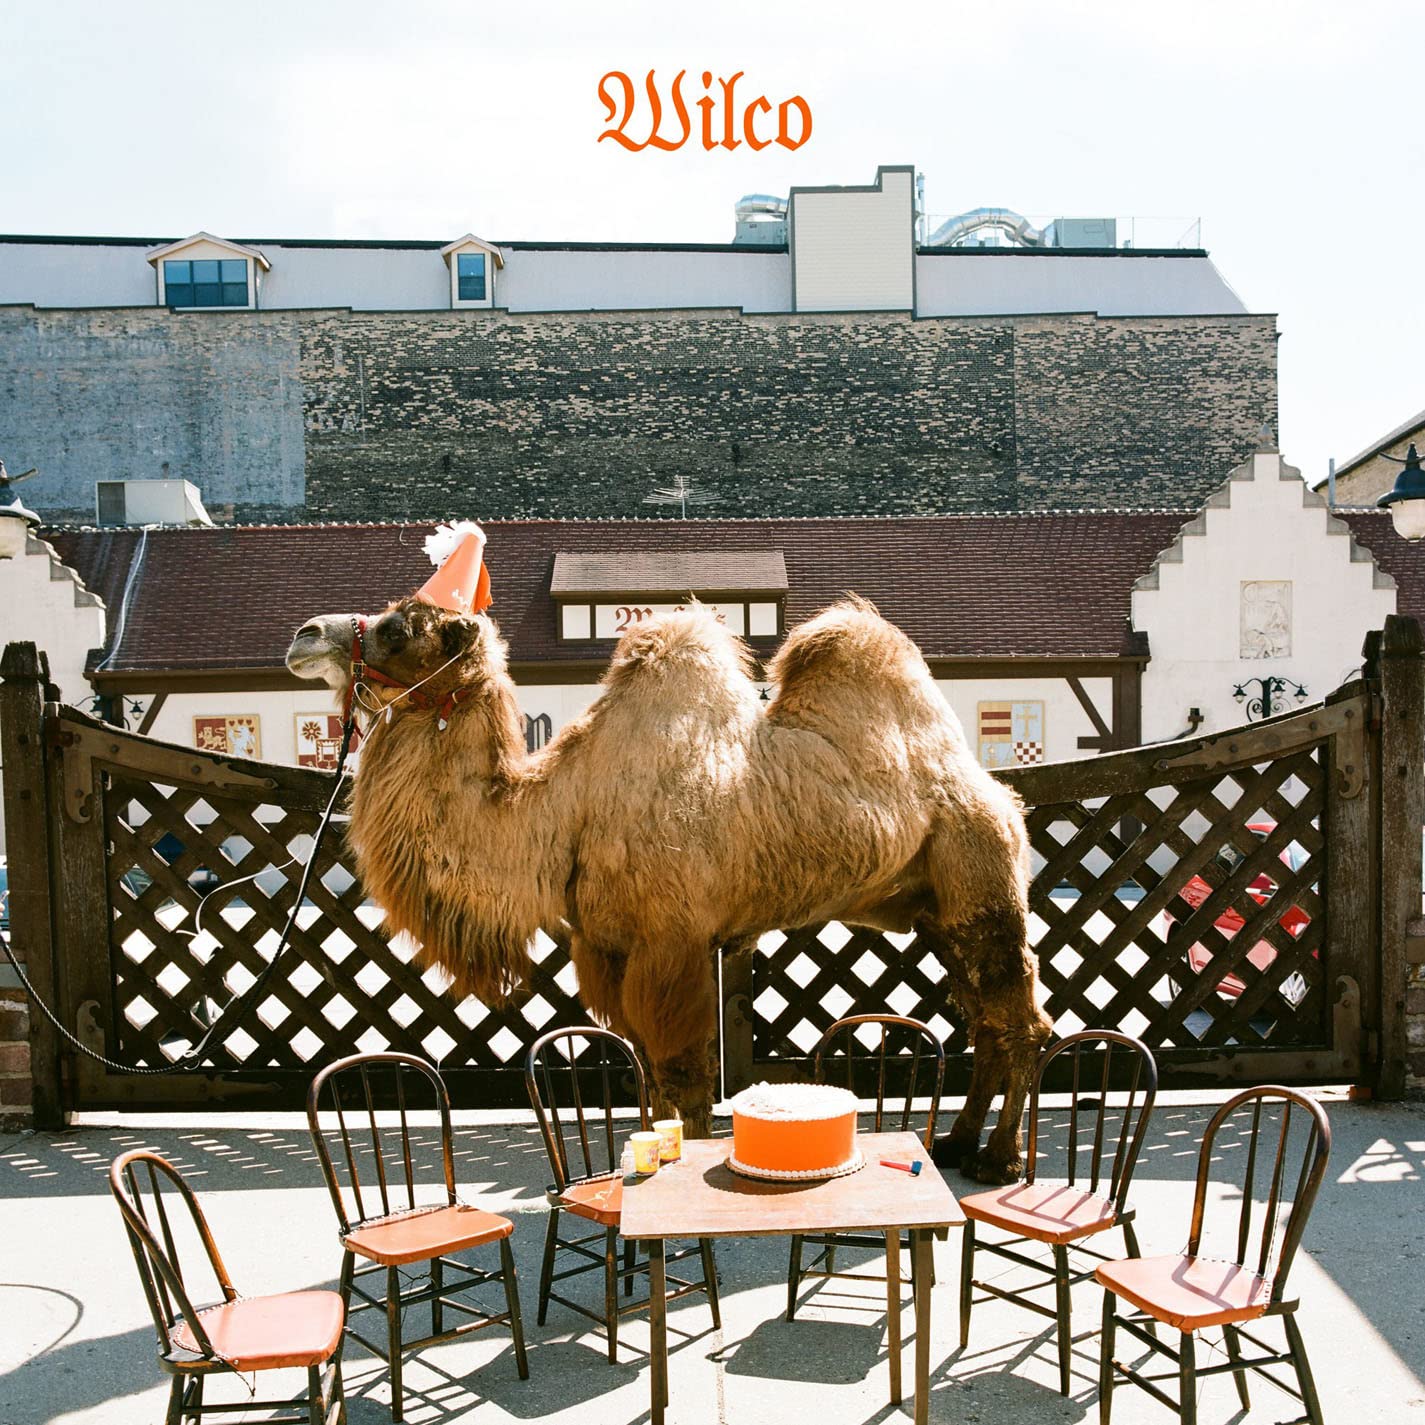 Wilco - Wilco: The Album